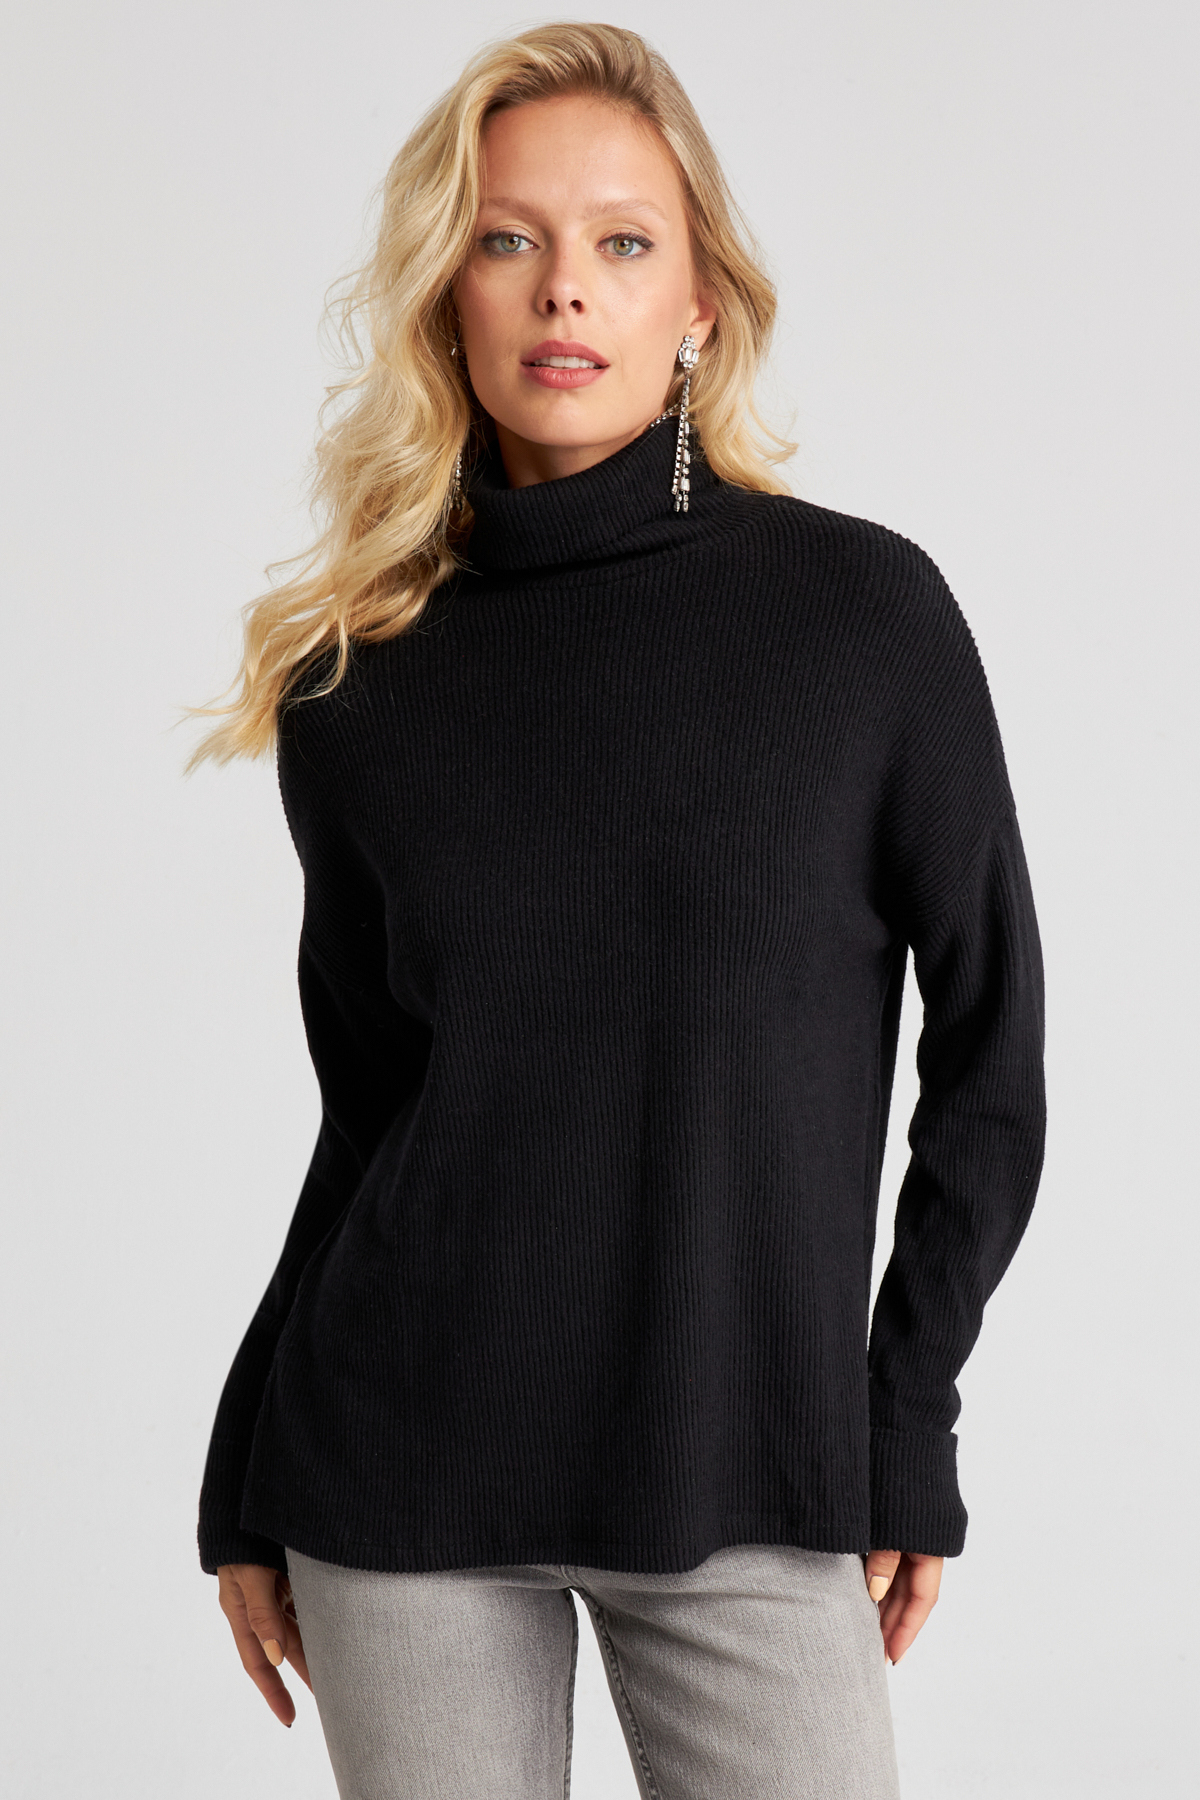 Cool & Sexy Women's Black Fisherman Corded Knitwear Sweater